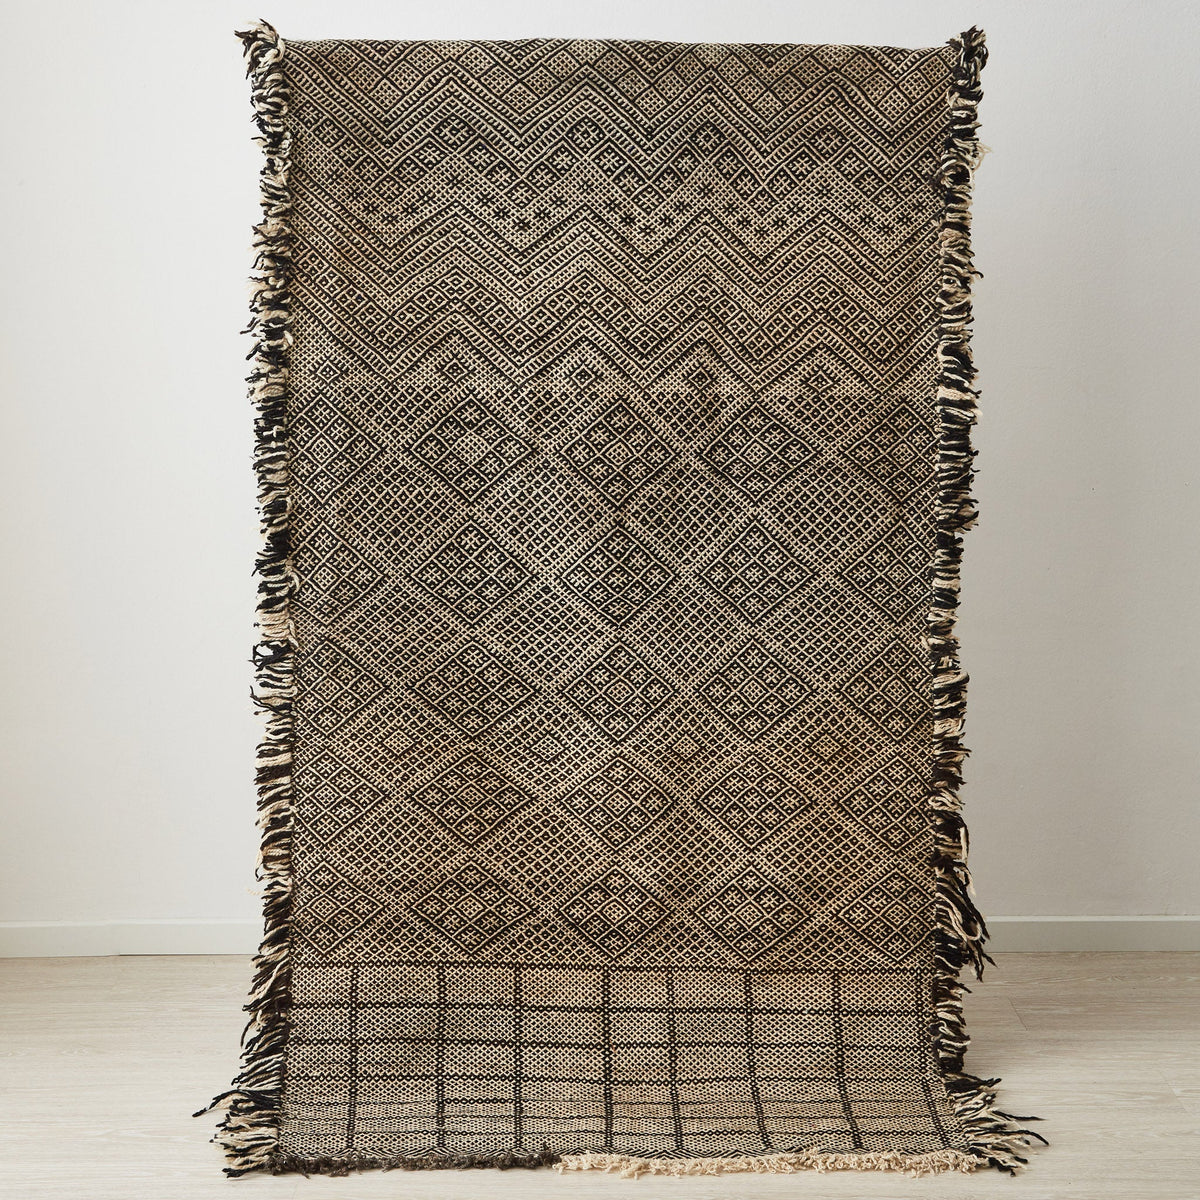 tappeto zanafi di taznakht a tessitura piatta di colore crema e nero con frange su tutti i lati in posizione verticale